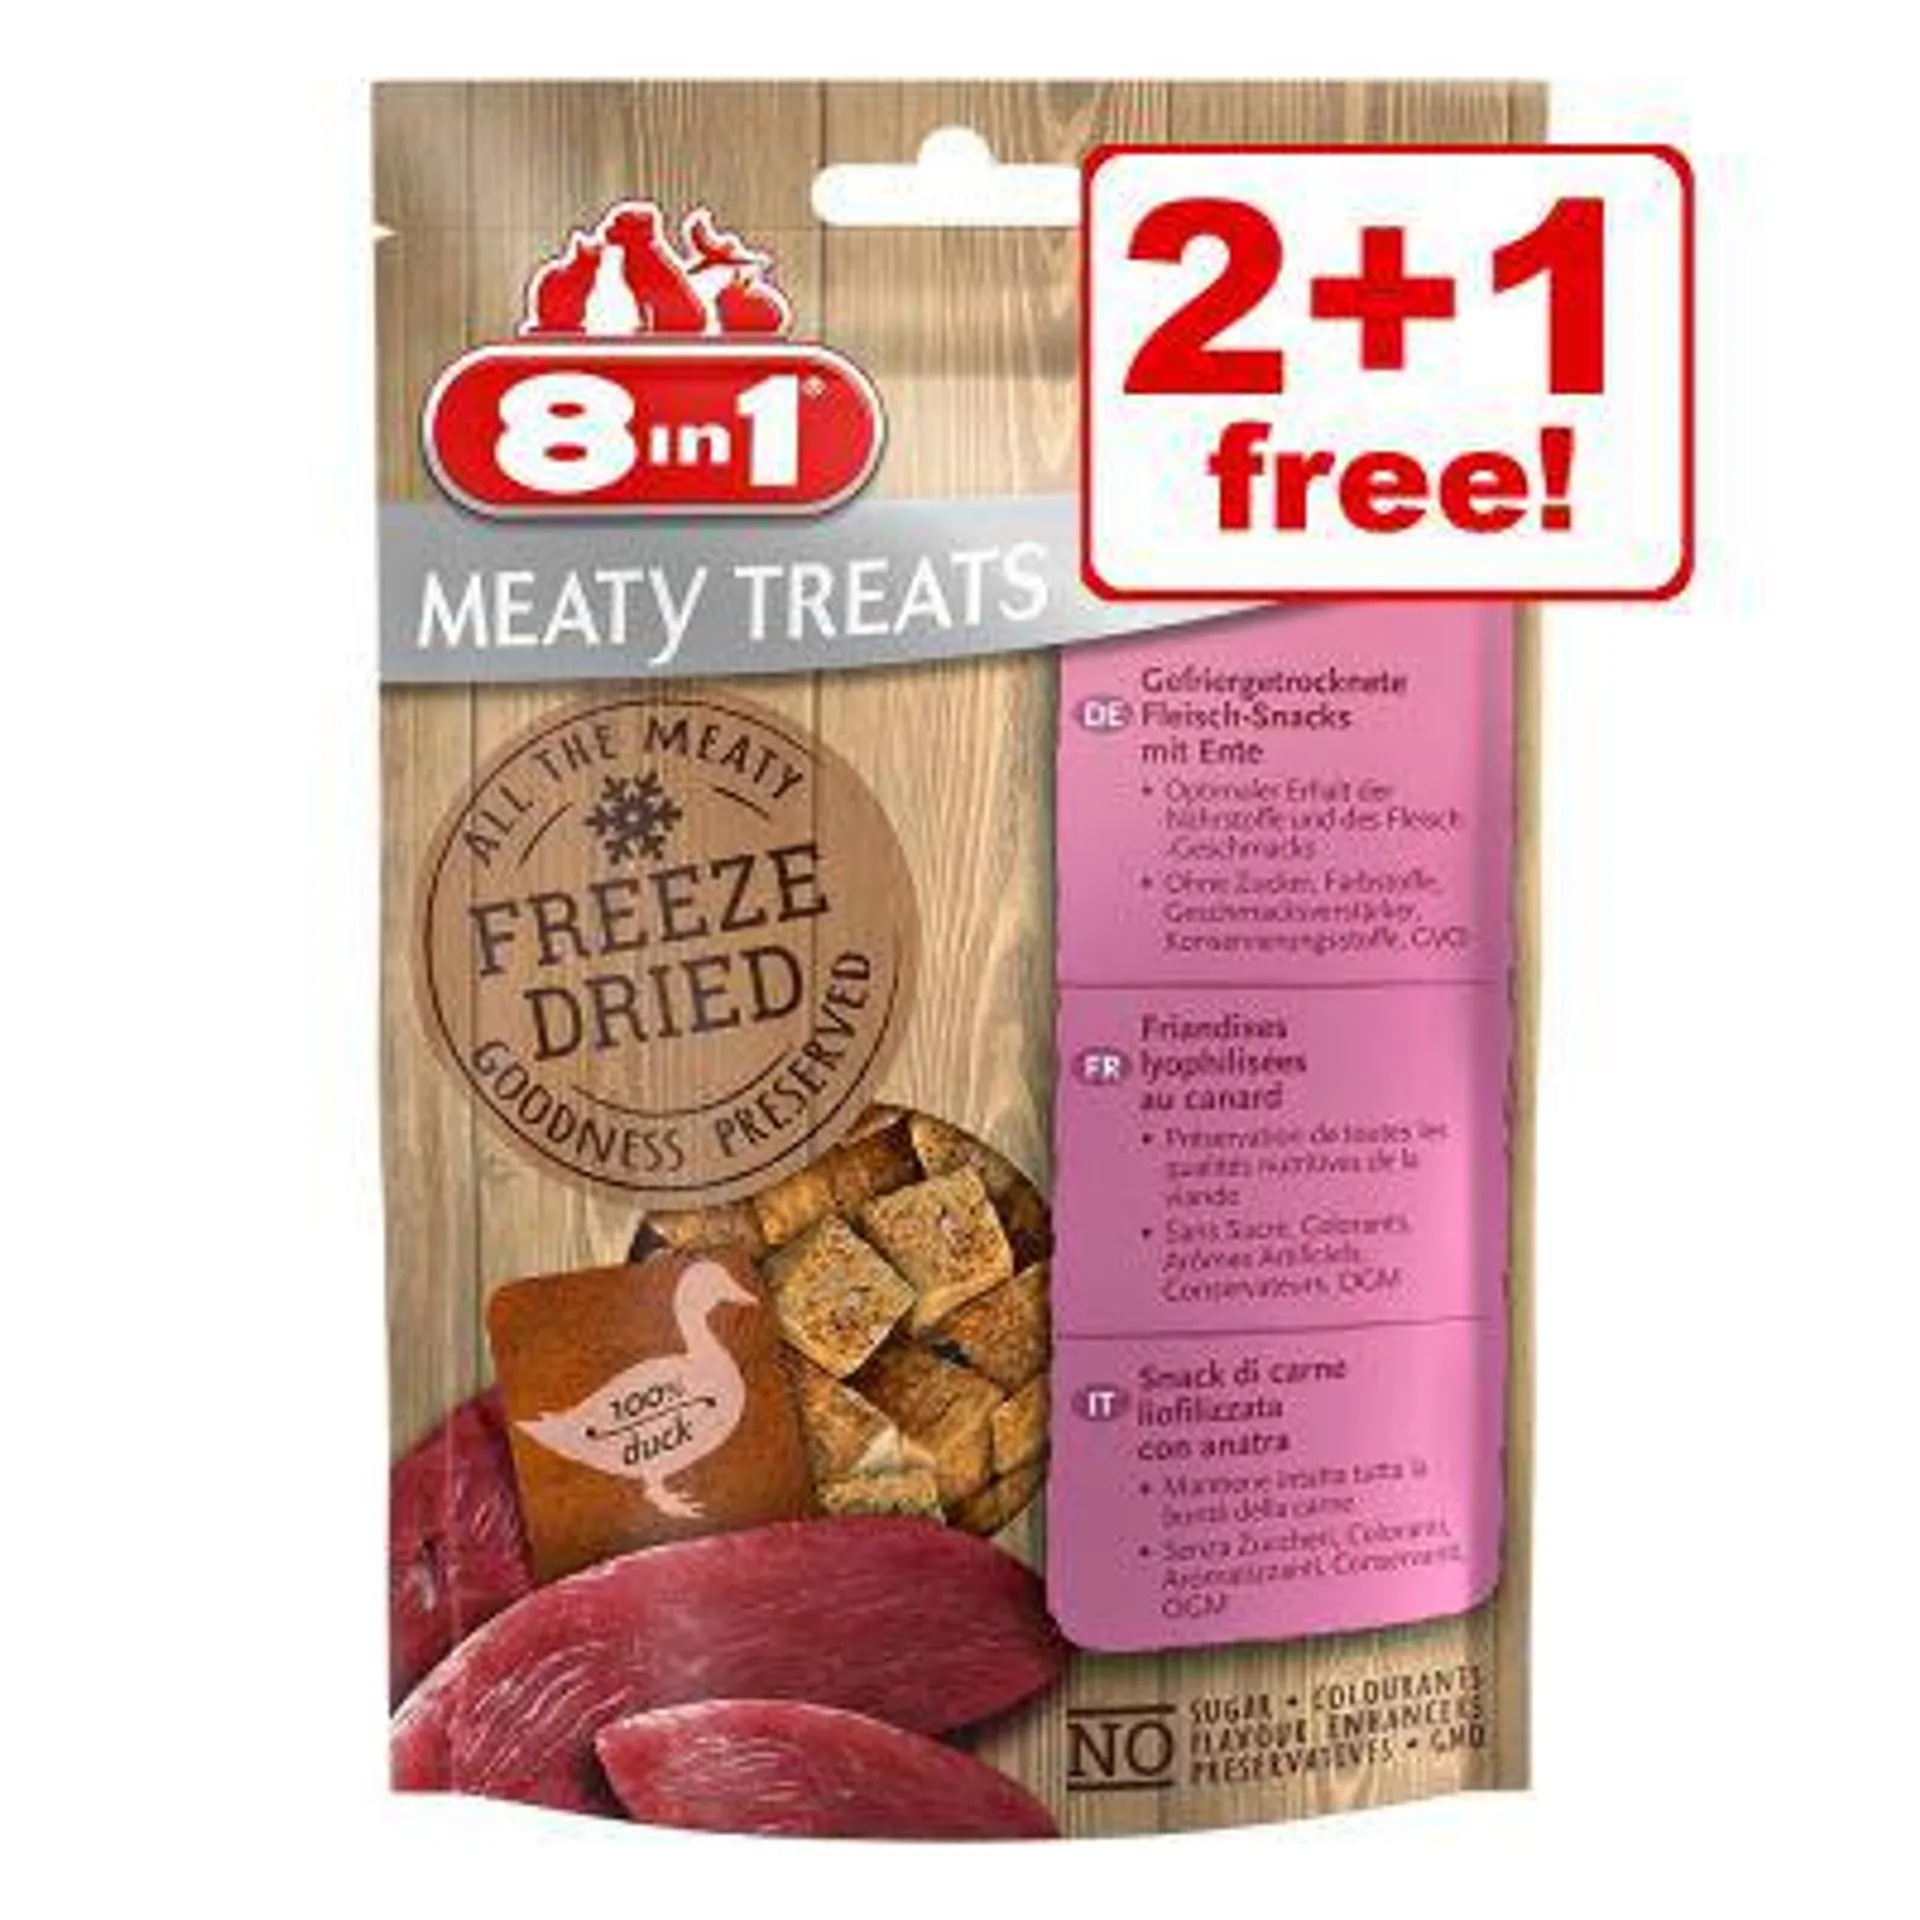 8in1 Meaty Dog Treats - 2 + 1 Free!*